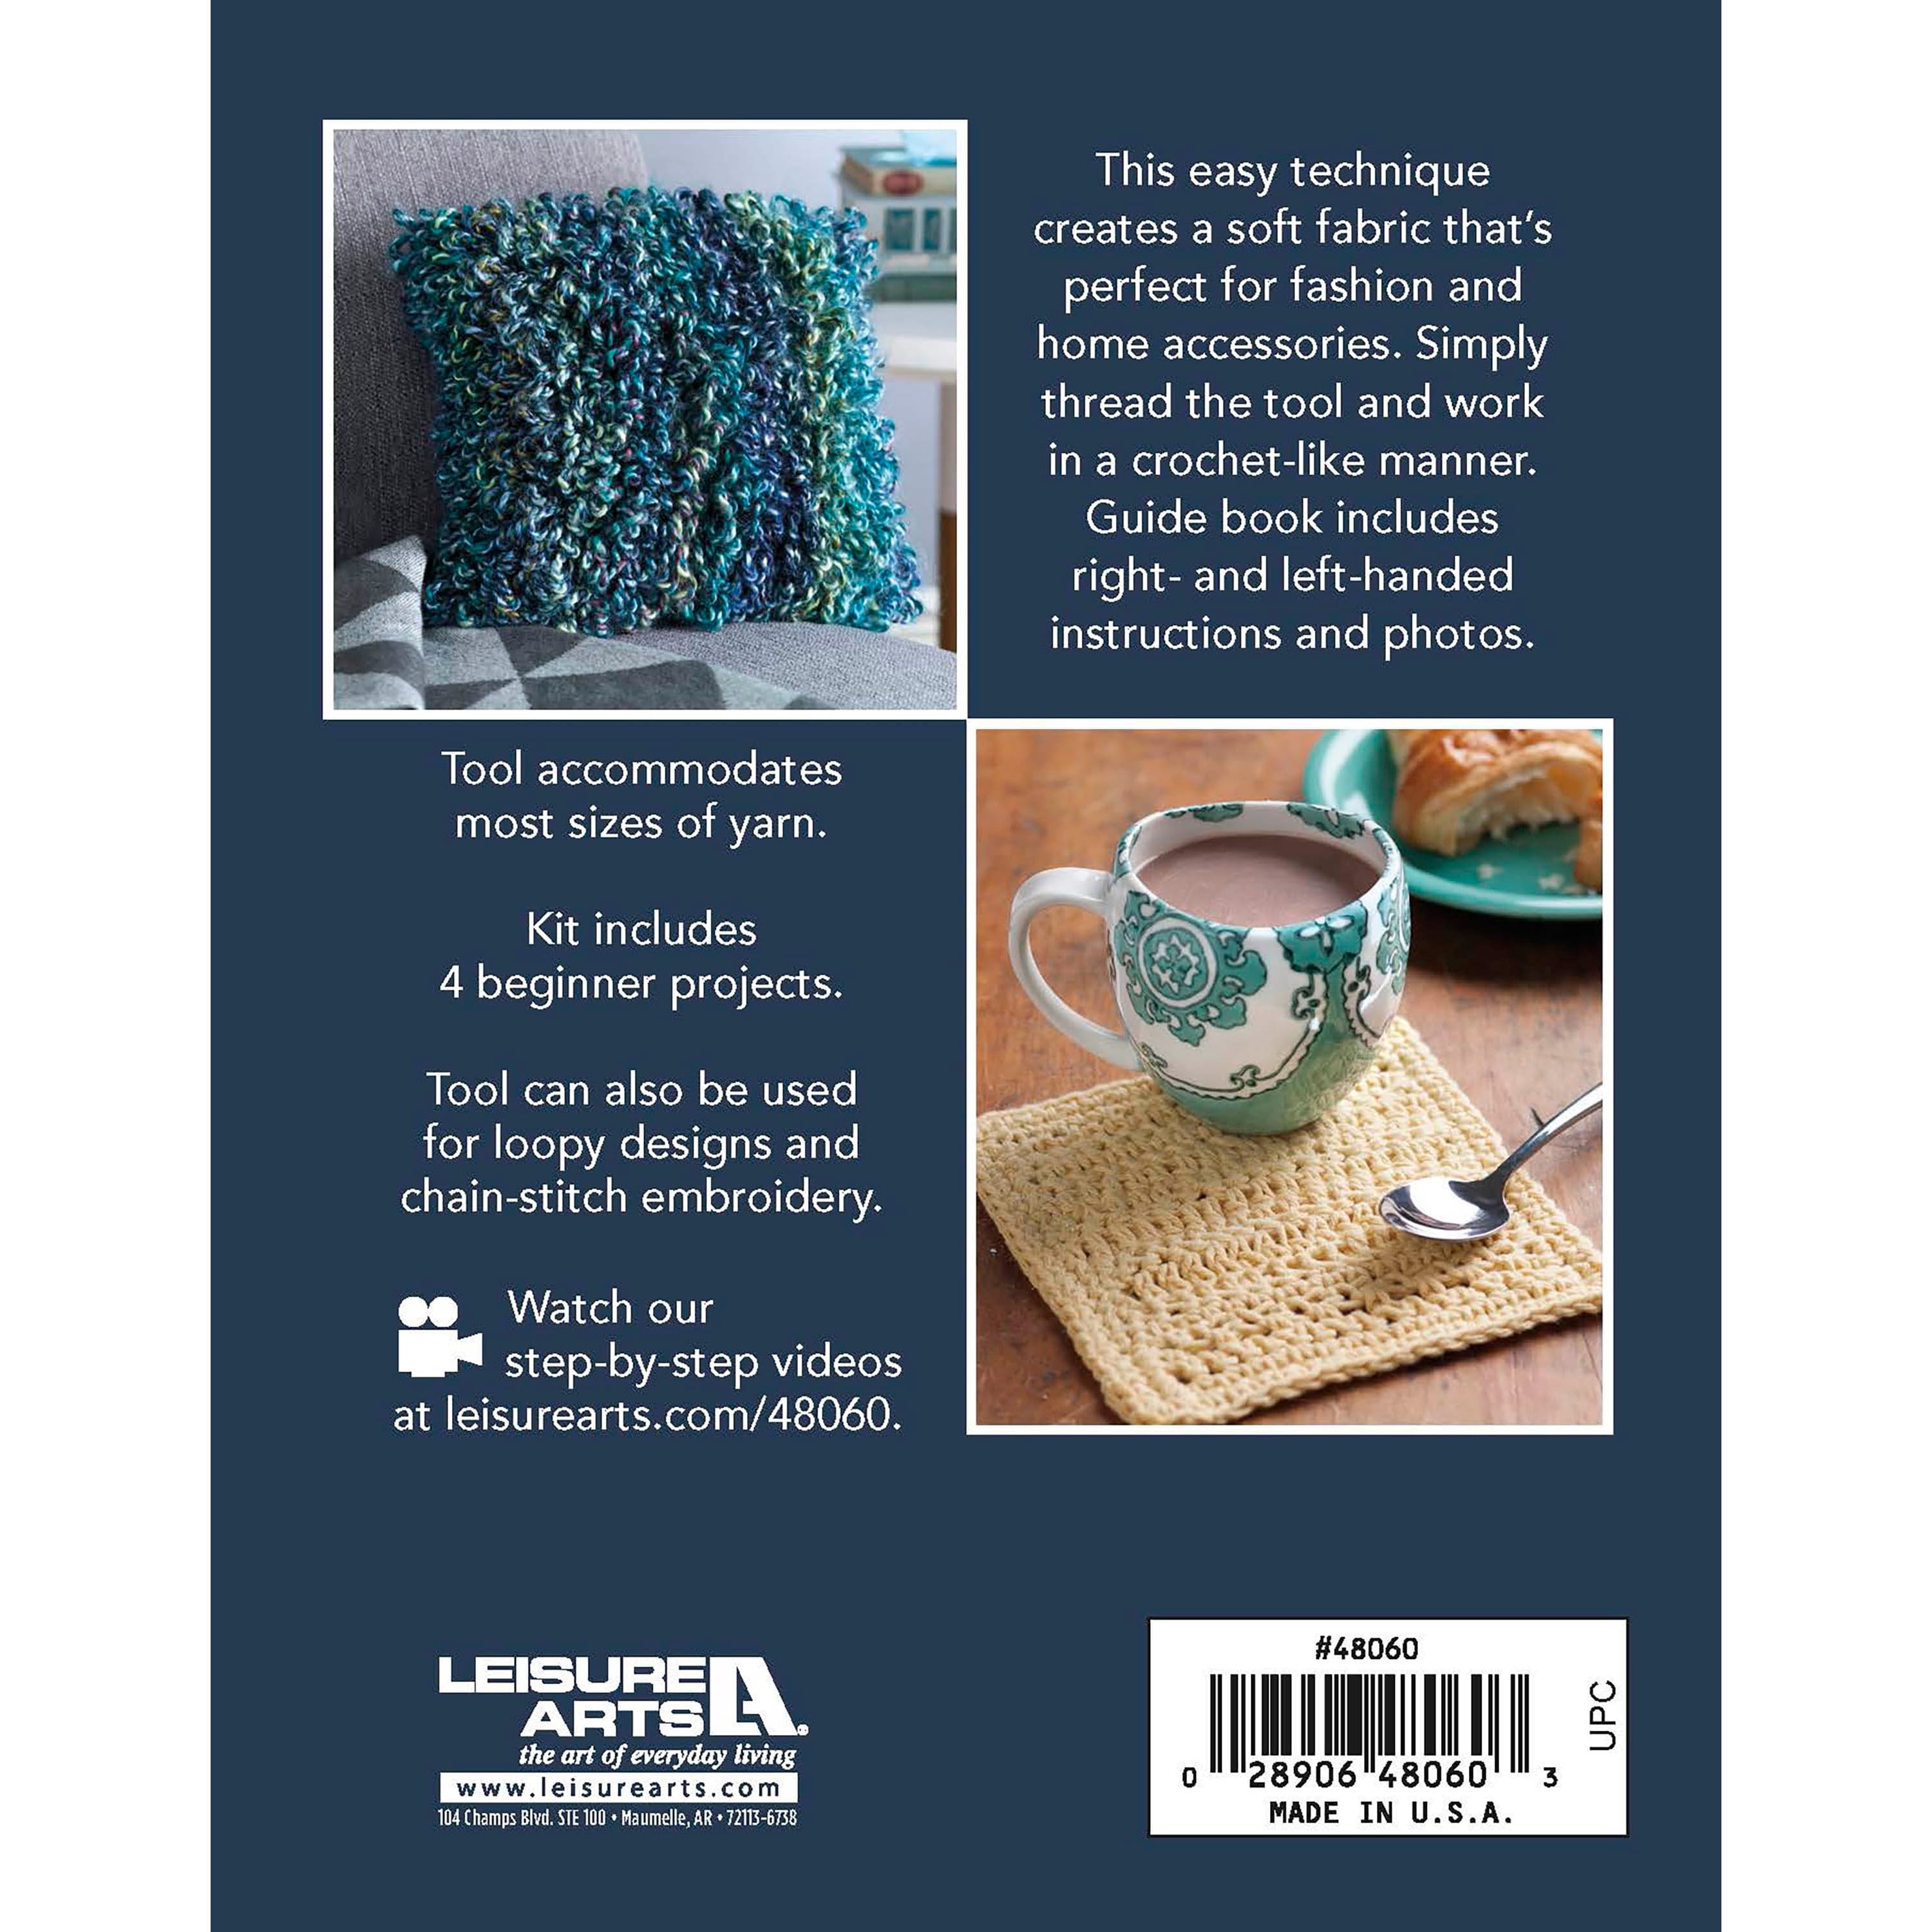 Leisure Arts&#xAE; Learn to Loop Crochet Book Kit